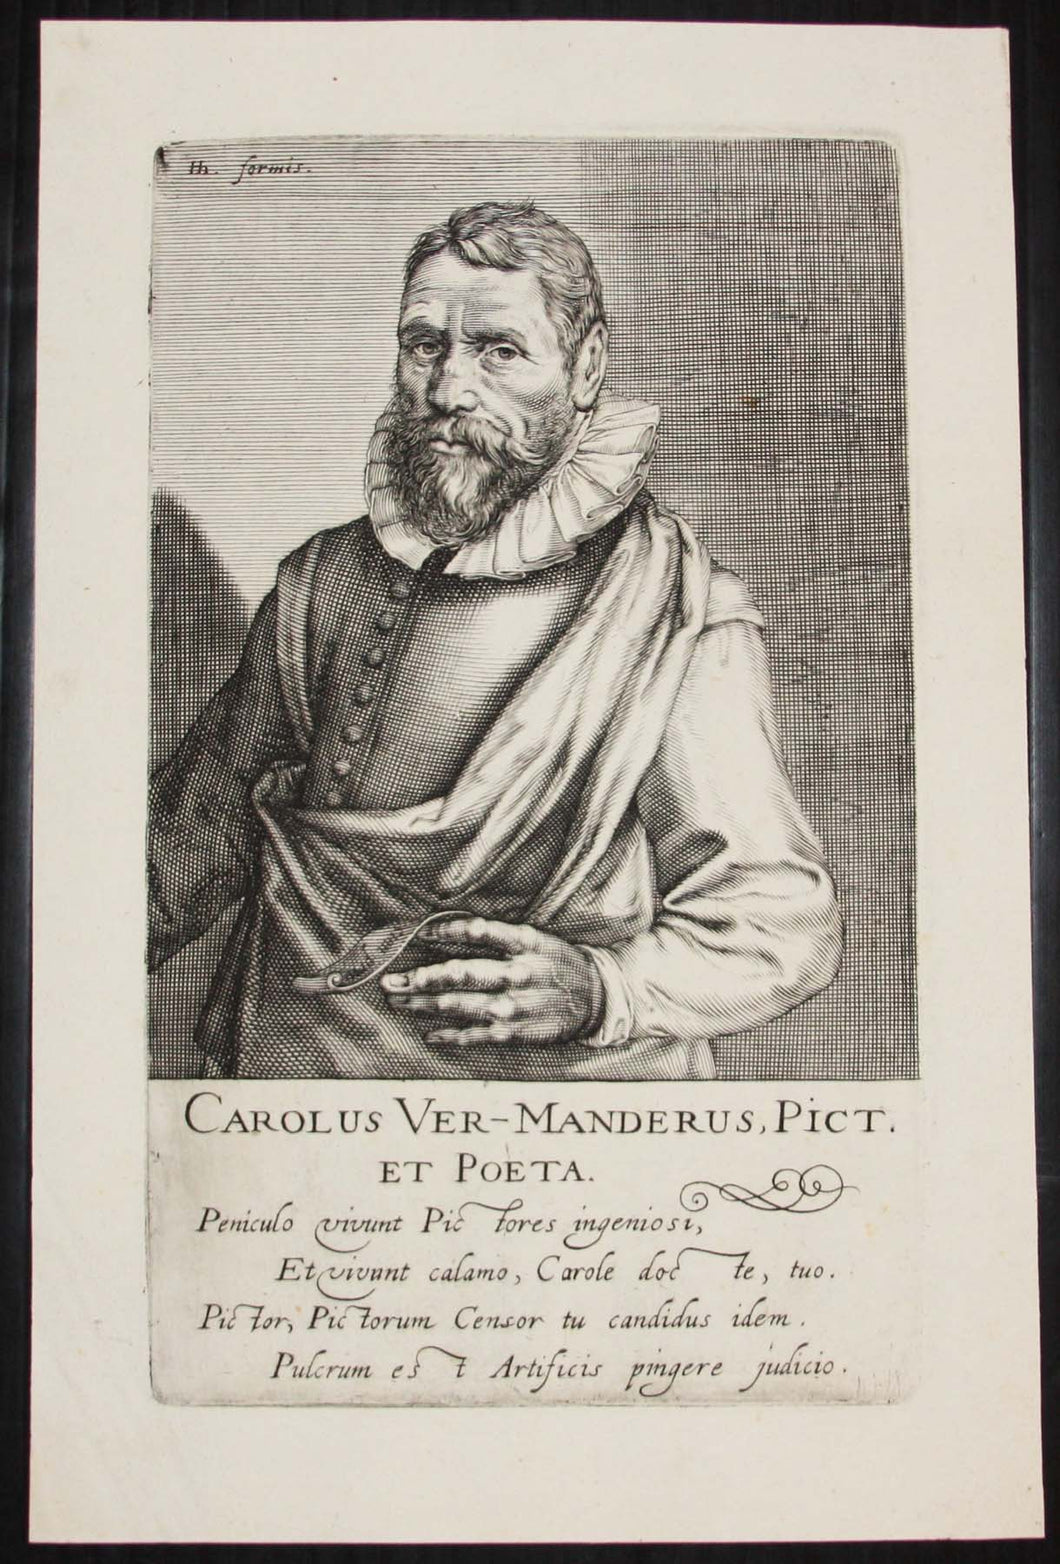 Portrait de Karel van Mander (Peintre et écrivain flamand 1548†1606). Carolus Ver-Manderus, Pict. et Poeta.